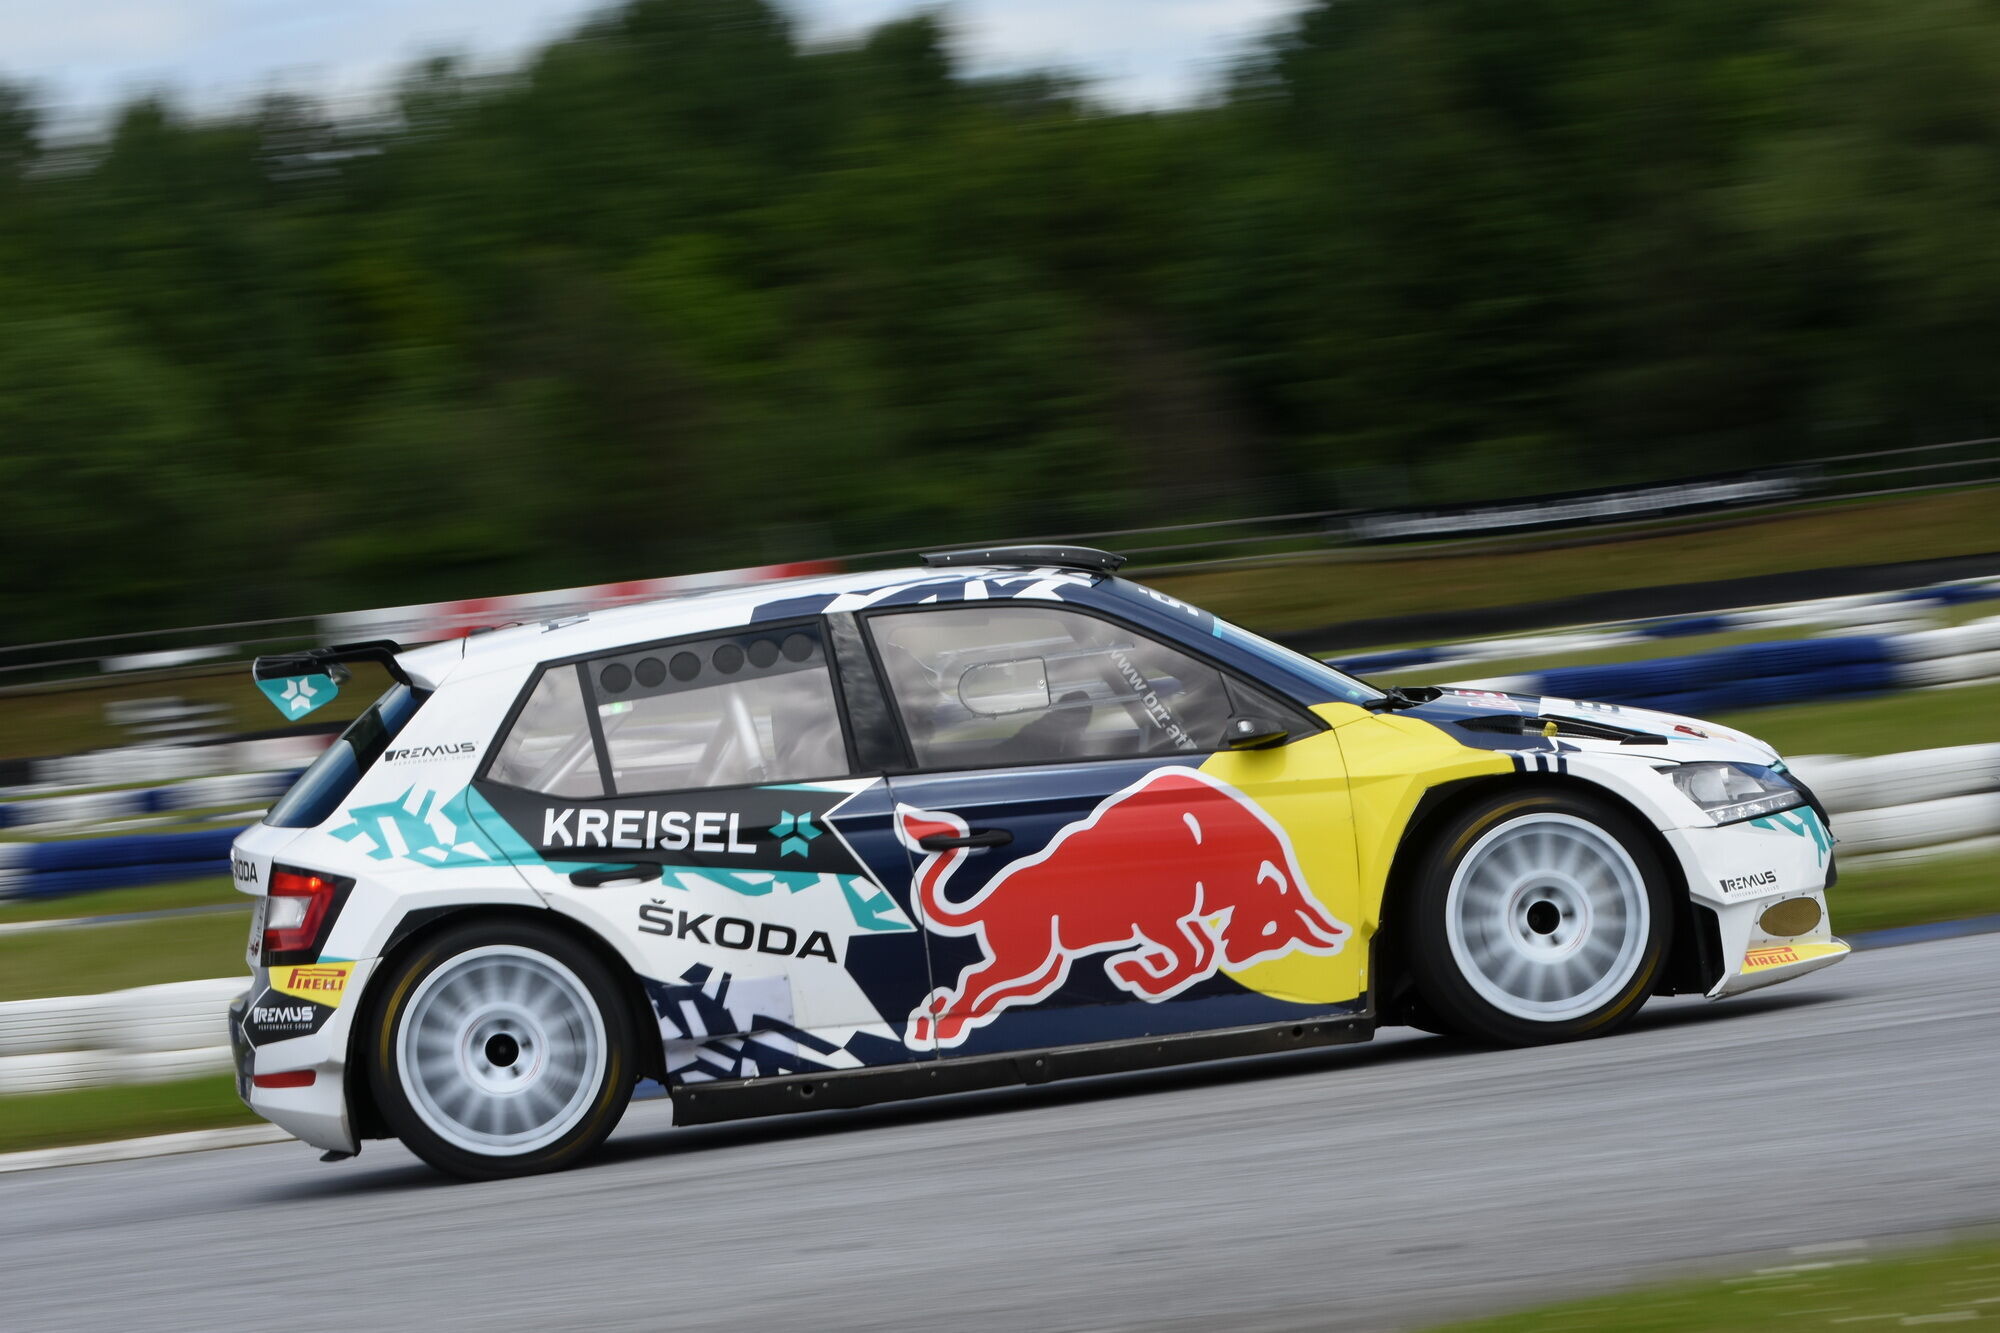 Виступати болід Skoda RE-X1 Kreisel буде під прапором гоночної команди Baumschlager Rallye & Racing